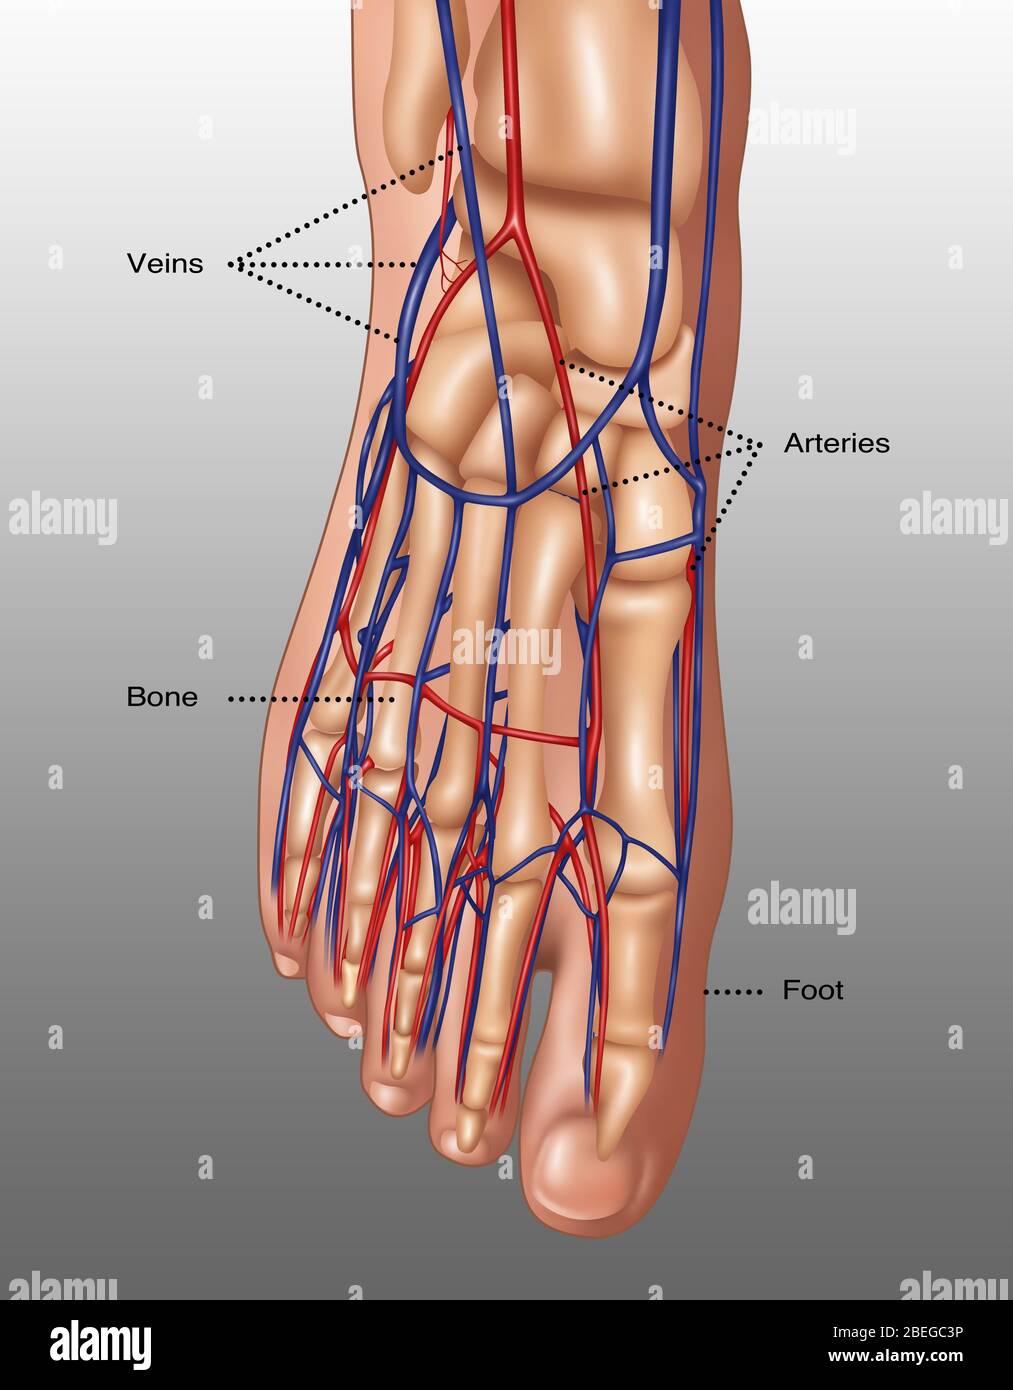 Illustrazione dell'anatomia del piede, inclusi cute, ossa, arterie (rosse) e vene (blu). Le dita dei piedi sono costituite dalle ossa di falange (falangi), due per l'alluce grande (in basso a destra) e tre per gli altri. Le ossa metatarsali nel mezzo-piede collegano le falangi alle ossa tarsali. Le ossa tarsali includono le ossa cuneiformi, le ossa cuboide e le ossa del tallone. Queste ossa si articolano con le ossa della gamba inferiore, la fibula e la tibia (osso dello shin), per formare la caviglia. Foto Stock